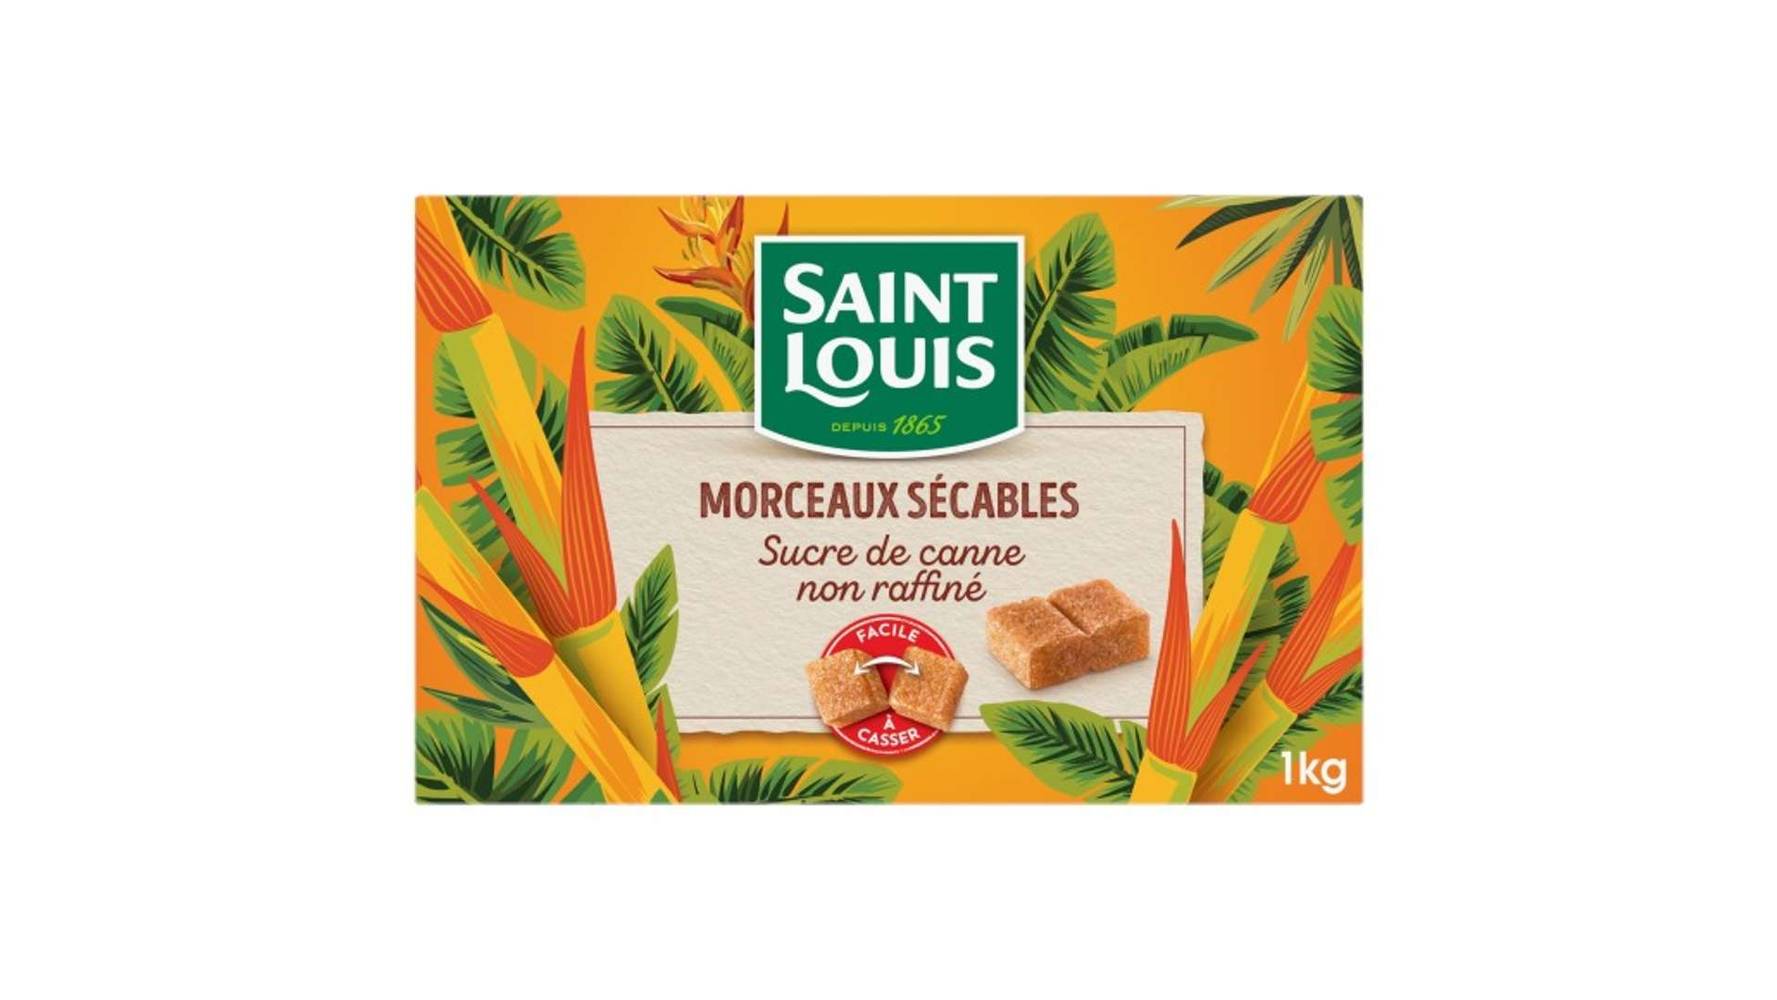 Saint Louis - Sucre morceaux sécables de canne